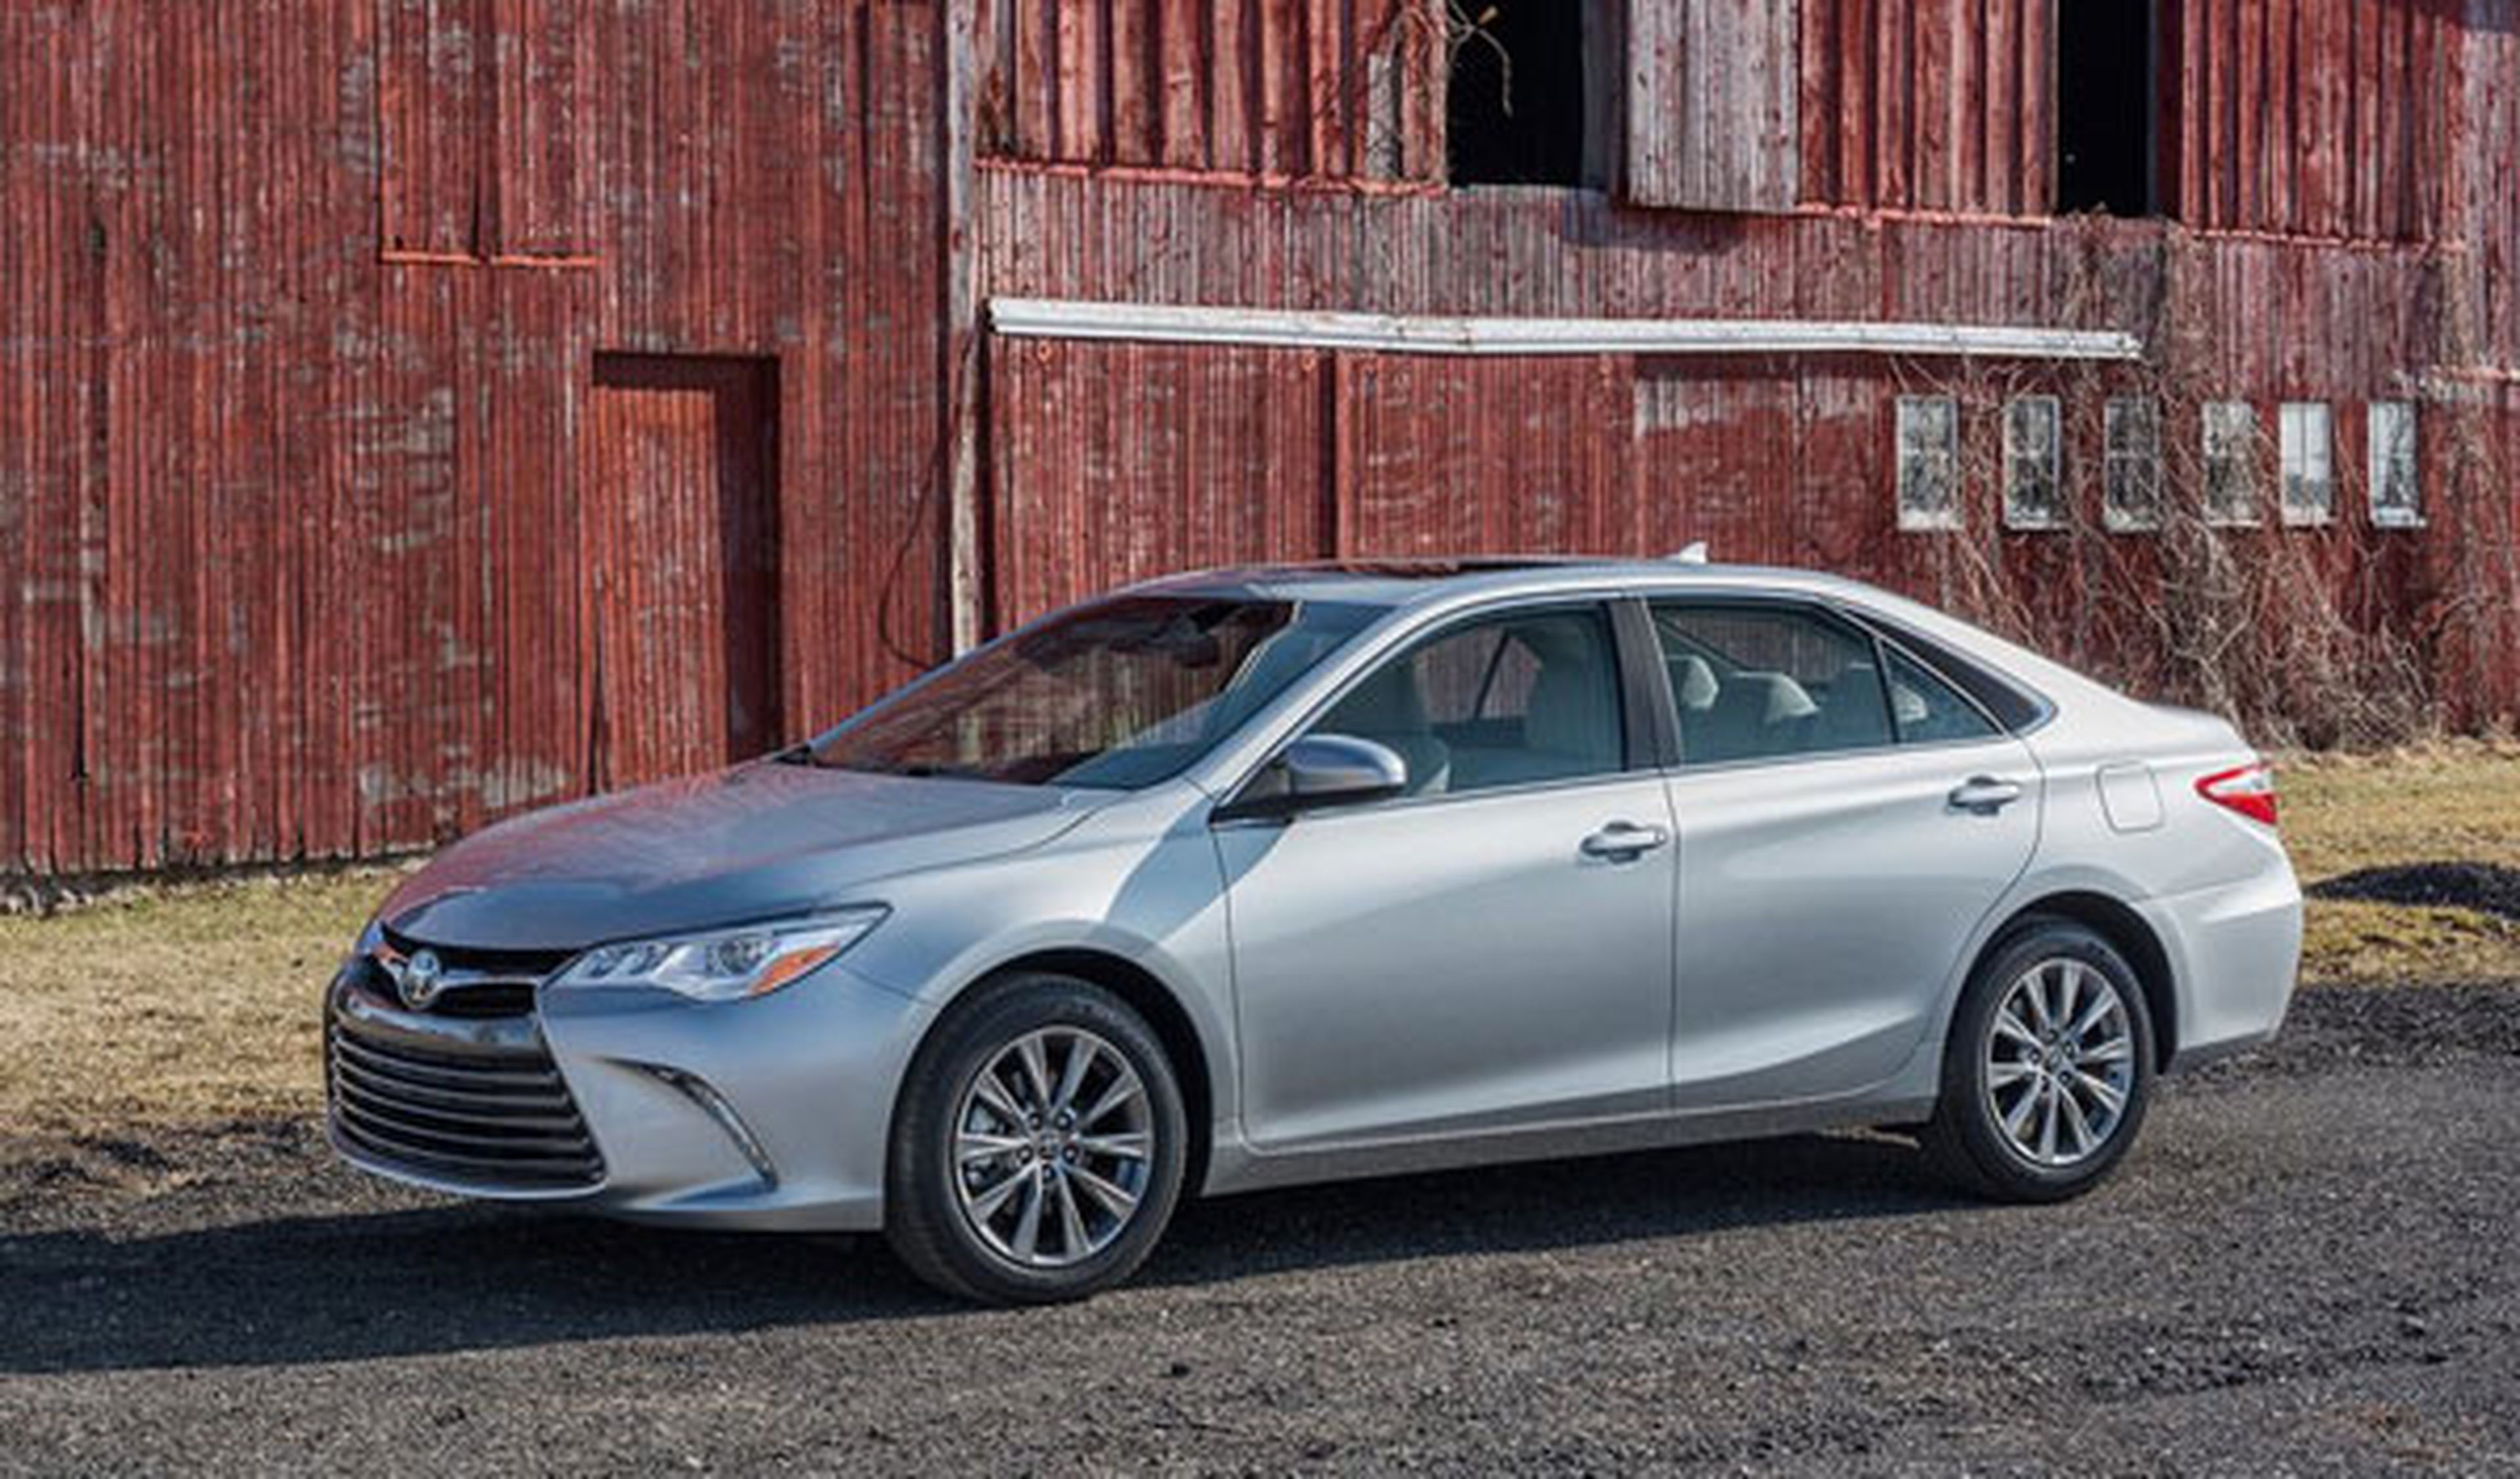 Toyota llama a revisión a 362.000 unidades en todo el mundo